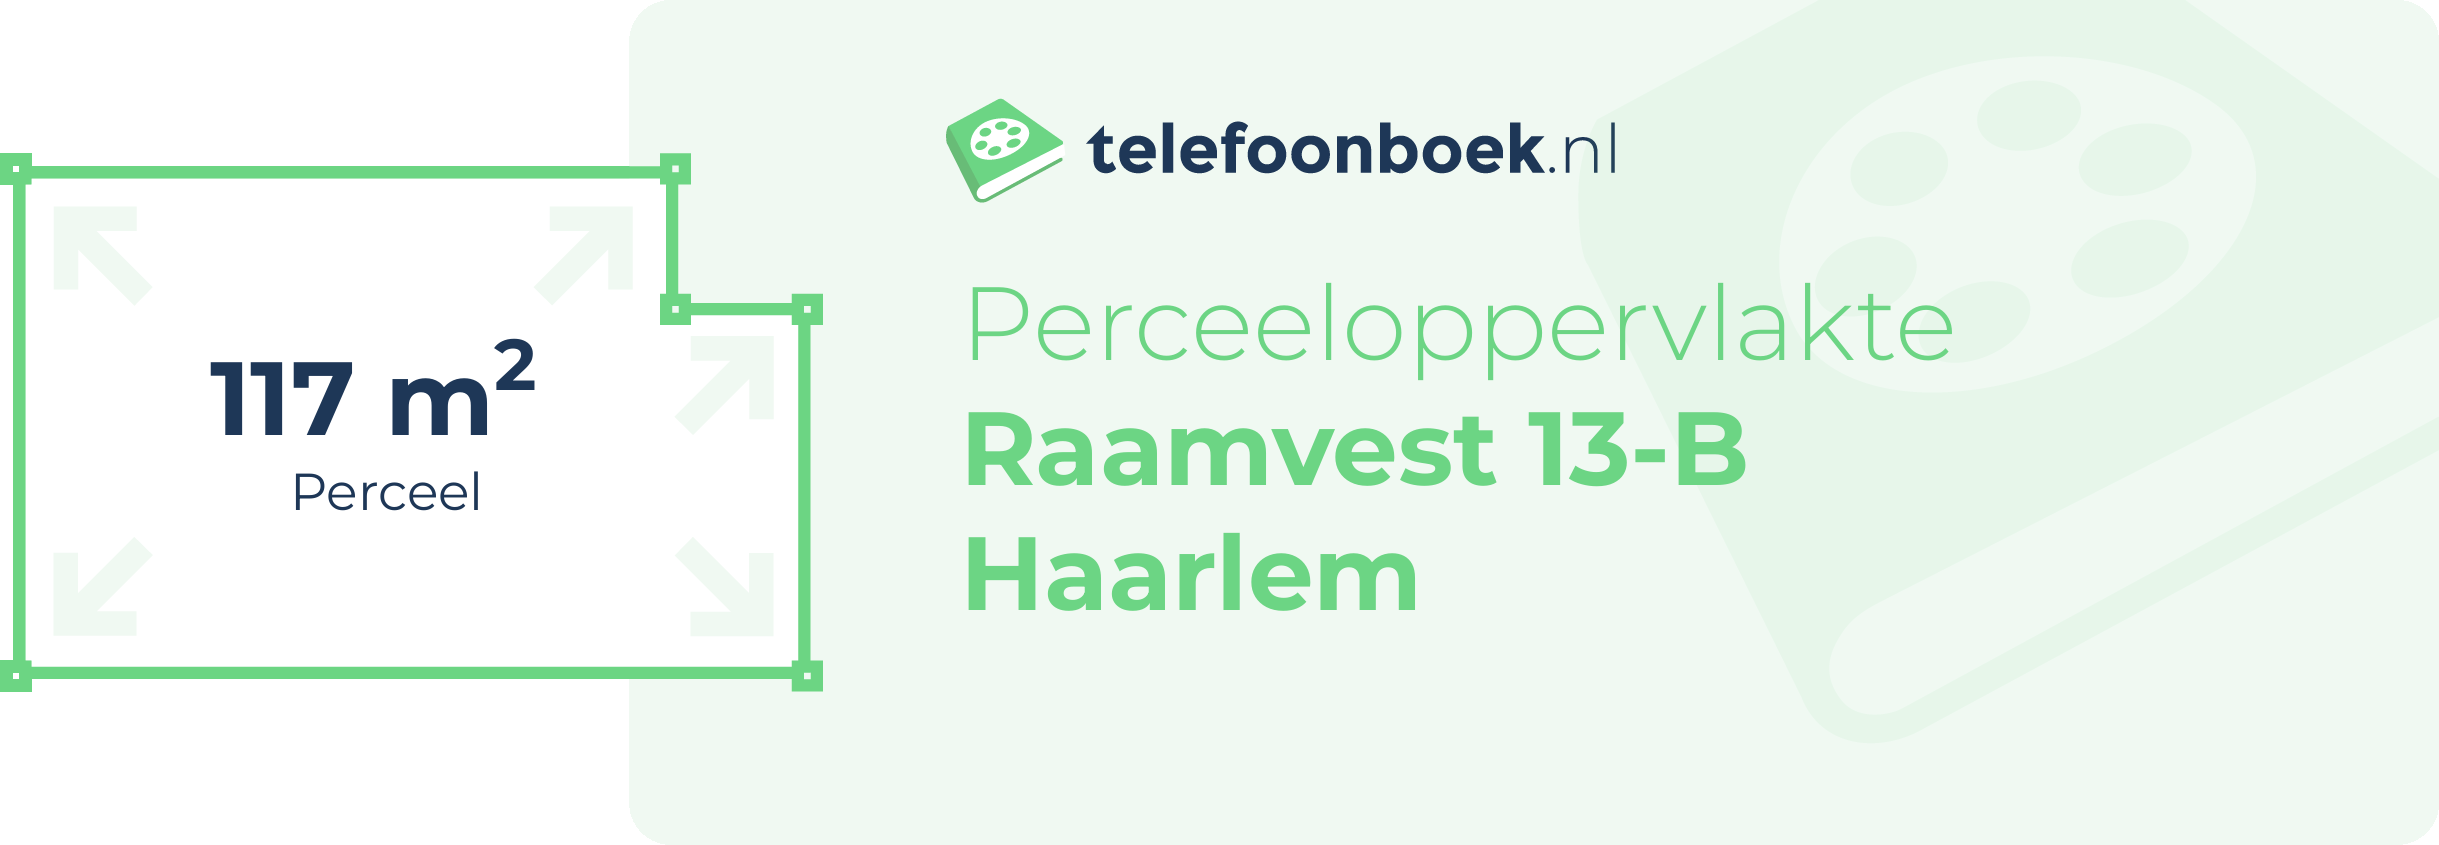 Perceeloppervlakte Raamvest 13-B Haarlem